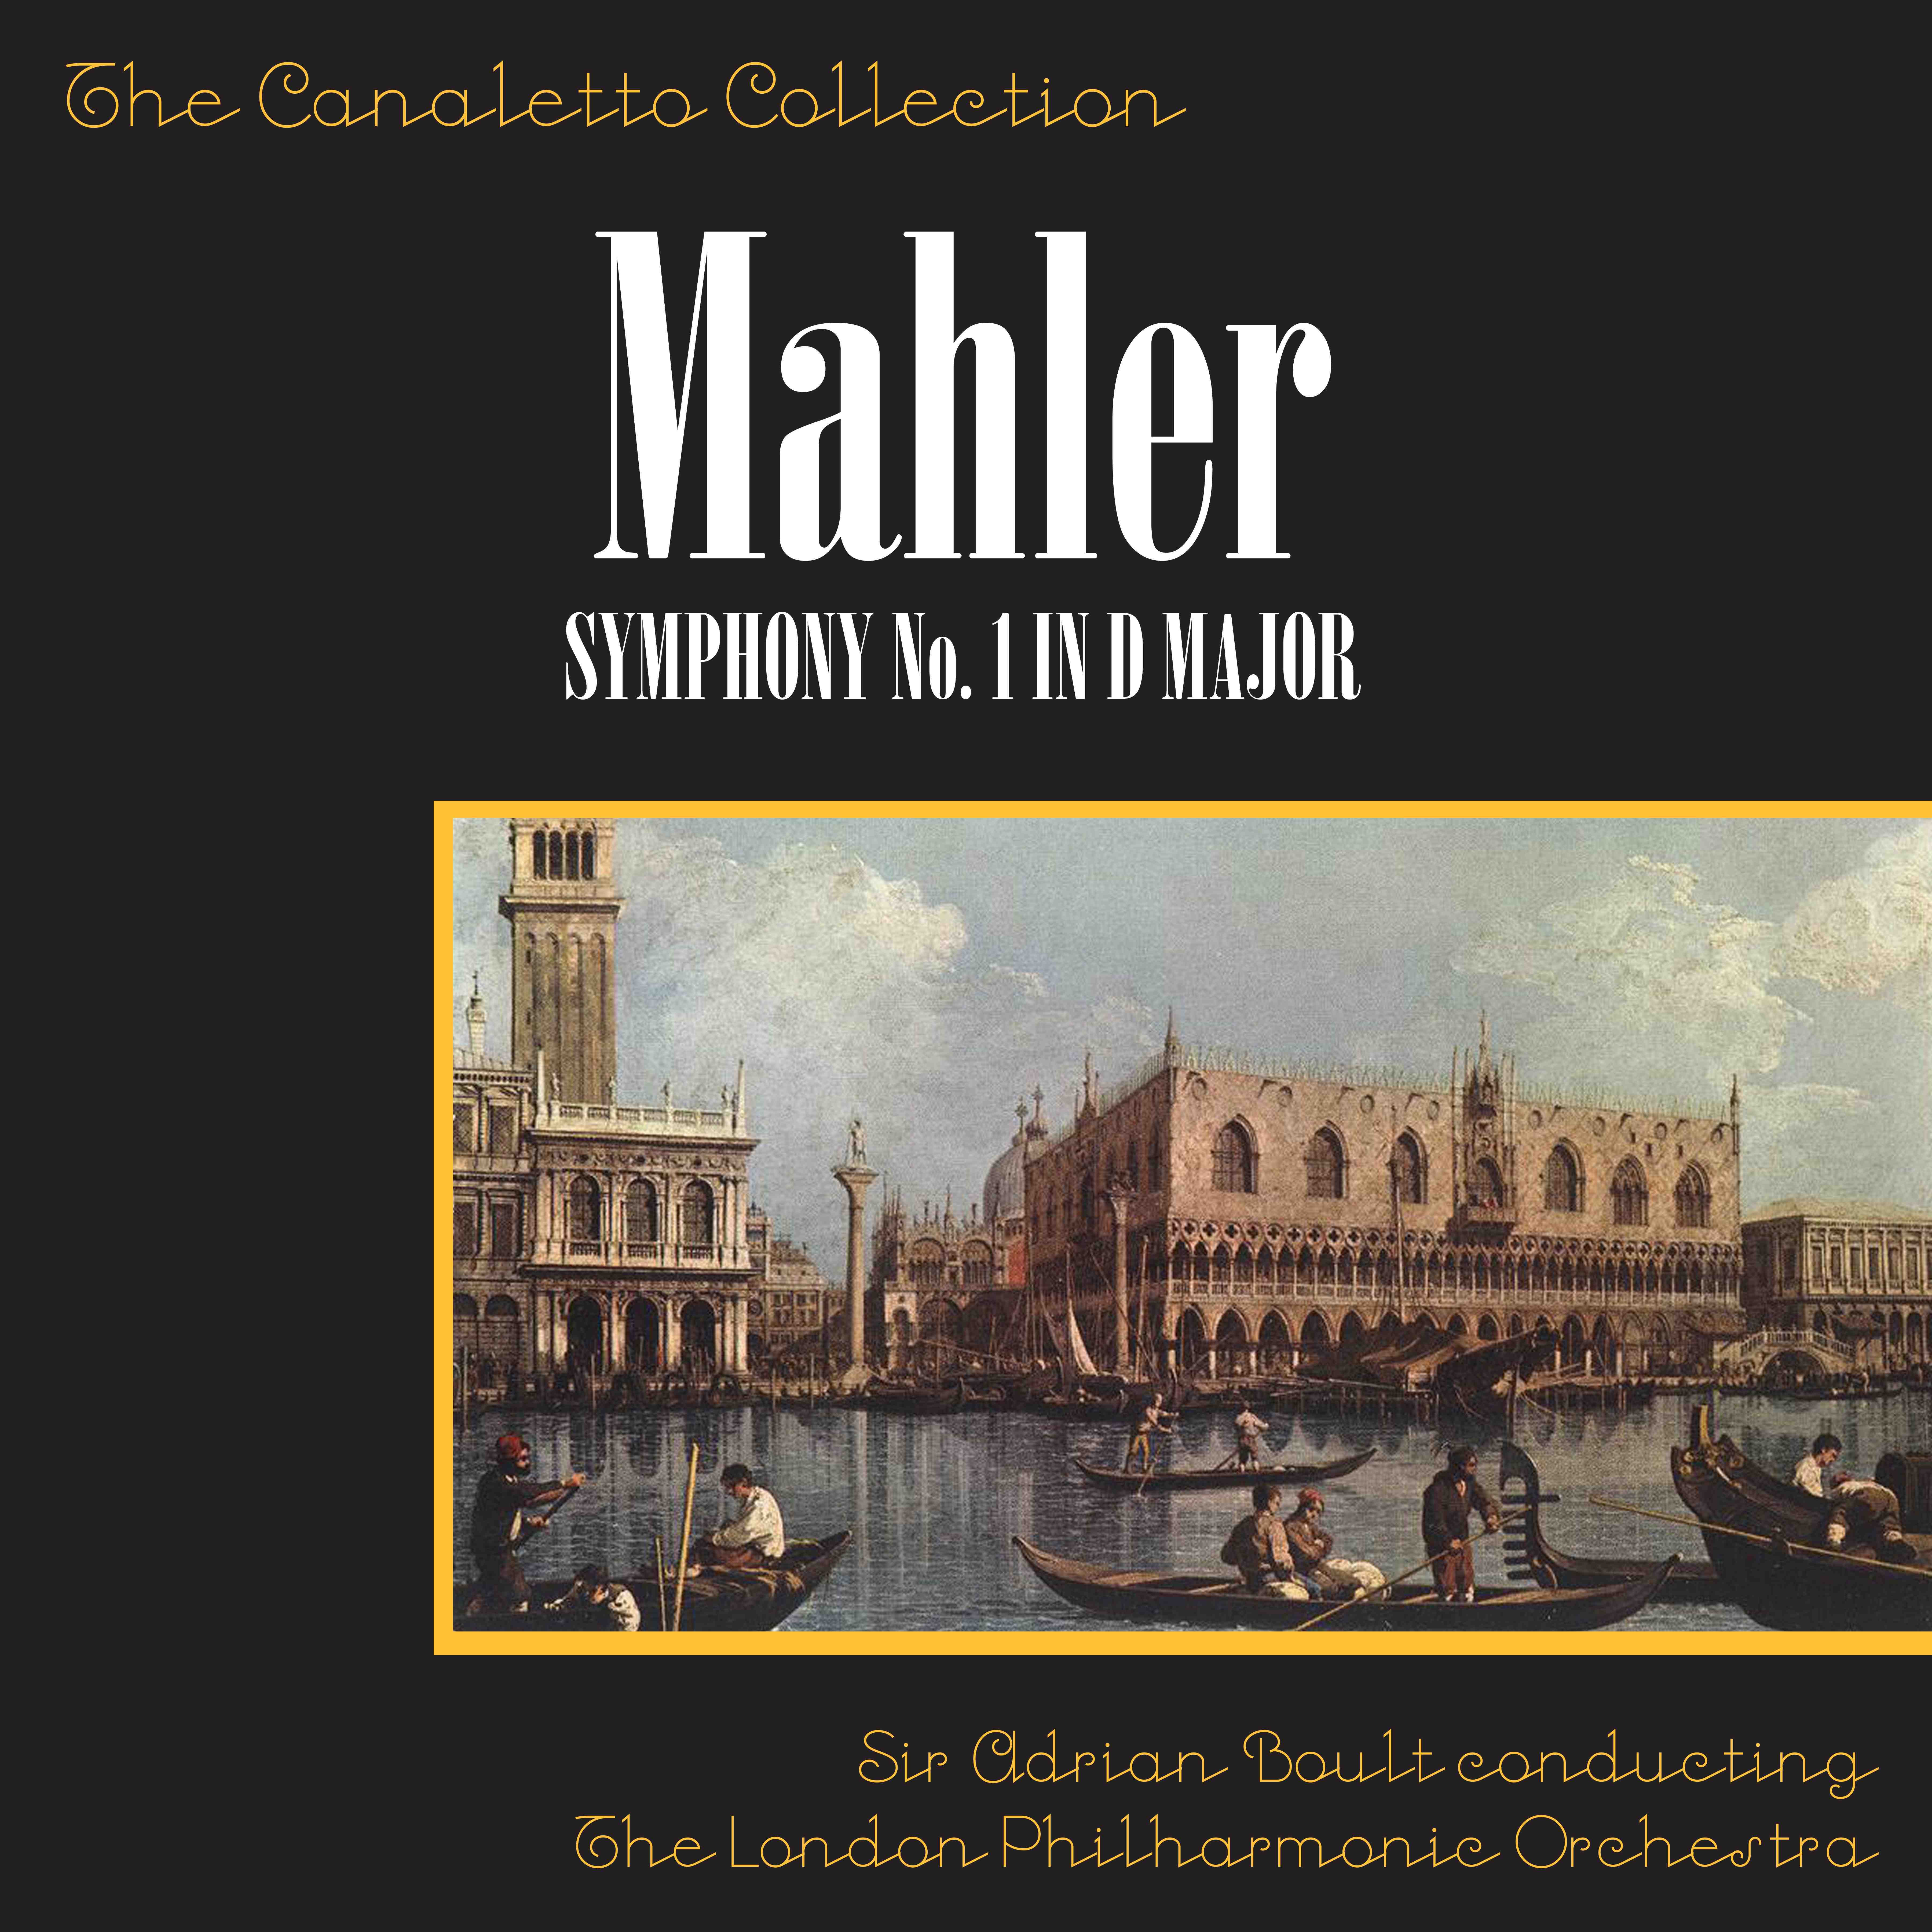 Mahler: Symphony No. 1 In D Major: 4th Movement - Sturmisch Bewegt